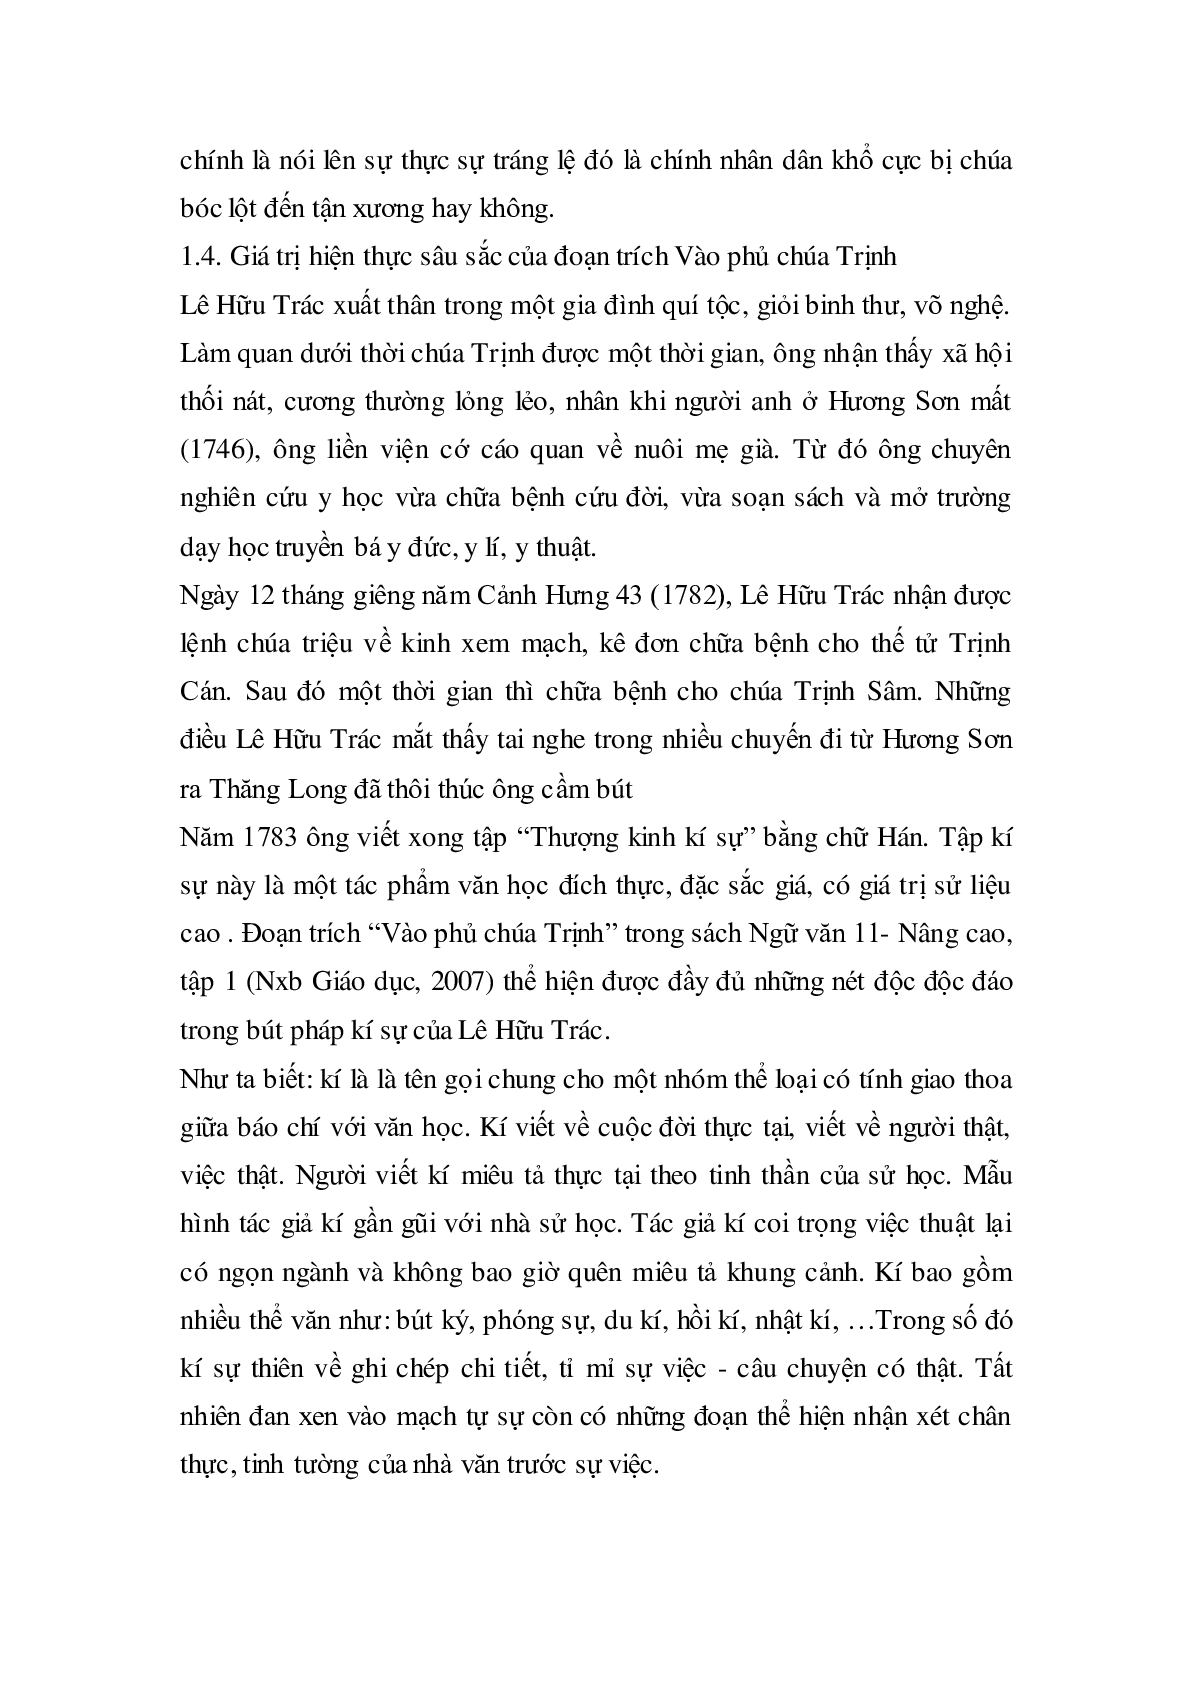 Soạn bài Vào phủ chúa Trịnh của Lê Hữu Trác - ngắn nhất Soạn văn 11 (trang 9)